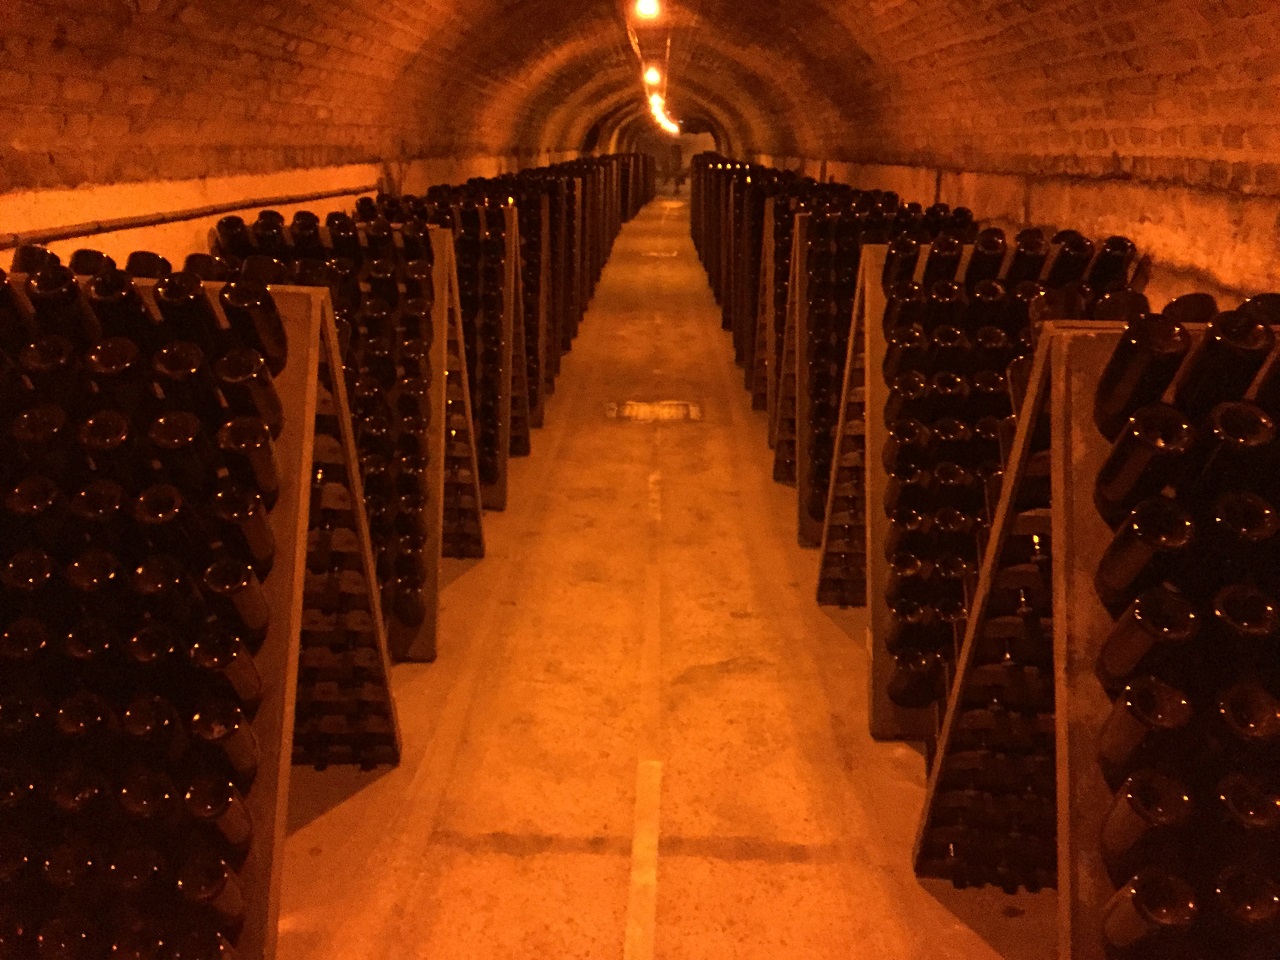 Visit the Moët & Chandon underground wine cellars in Champagne